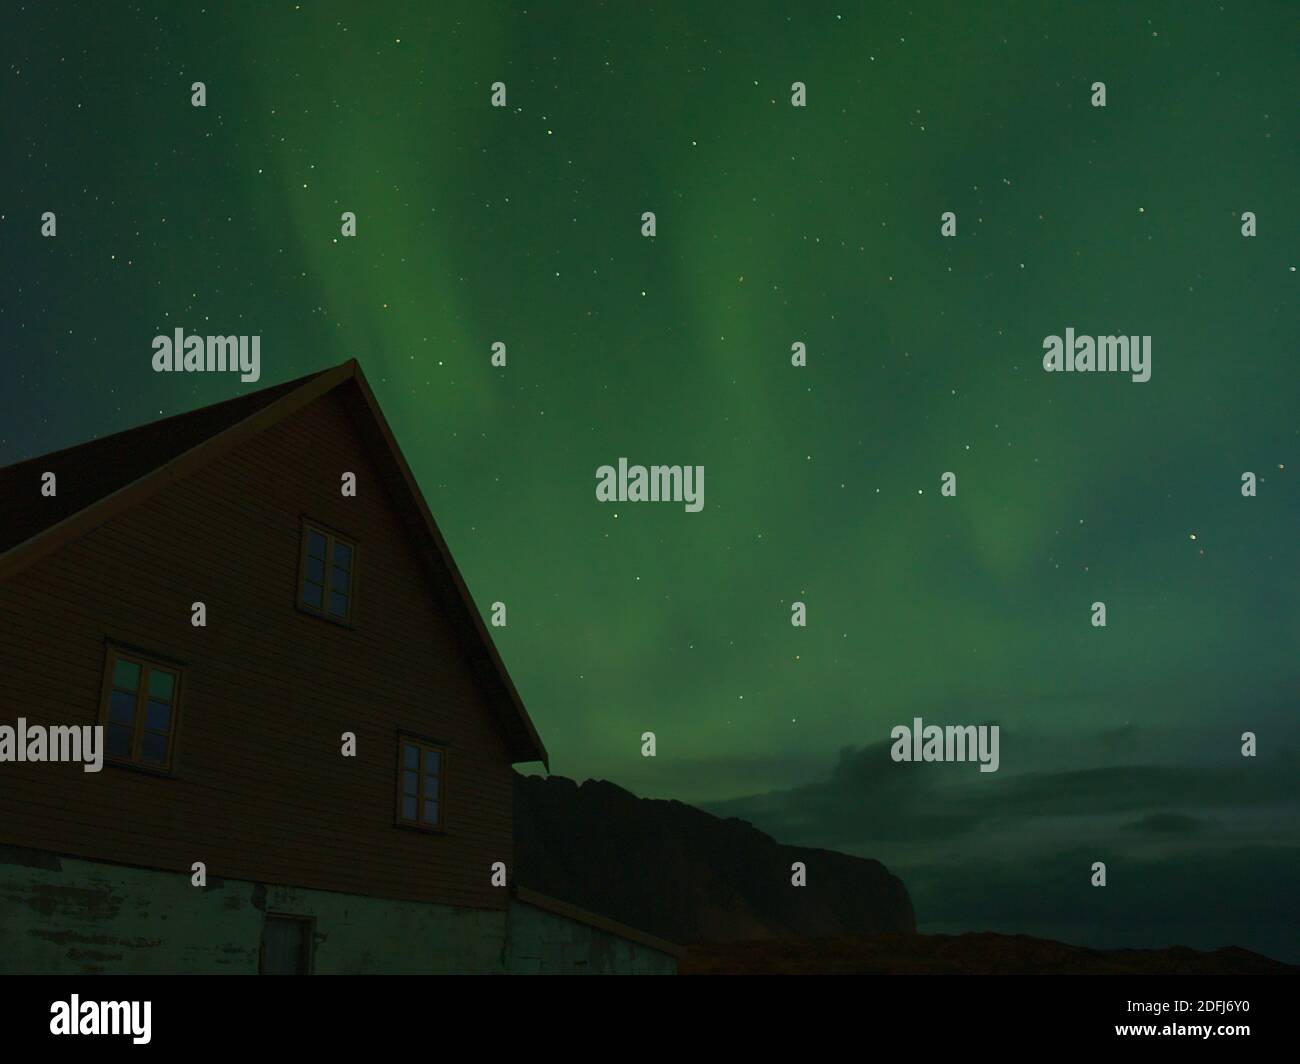 Bella vista del cielo notturno con luci polari lucide e luminose (aurora borealis) in colore verde sopra la vecchia casa e le sagome delle montagne in Norvegia. Foto Stock